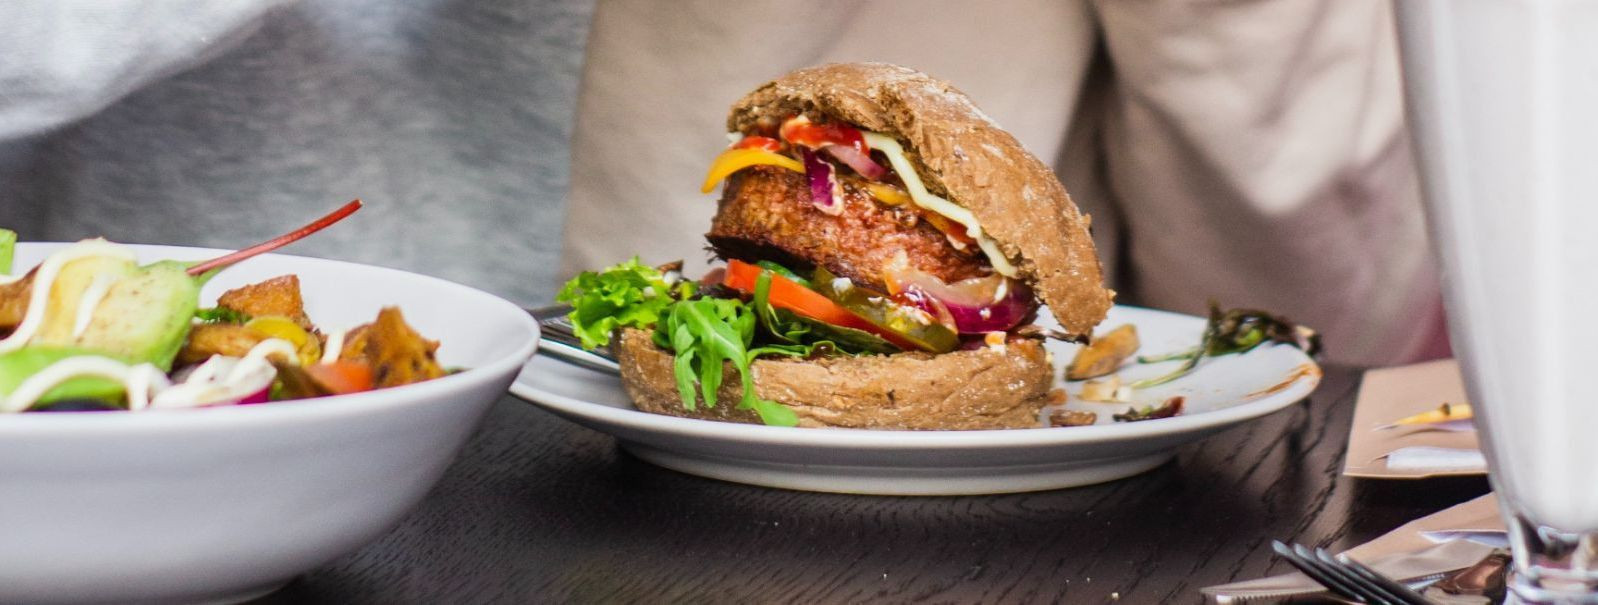 Lihagurmaanide jaoks pole midagi paremat kui mahla täis burgeri hammustamine. See on kogemus, mis paitab maitsemeeli ja rahuldab hinge. Selles postituses sukeld